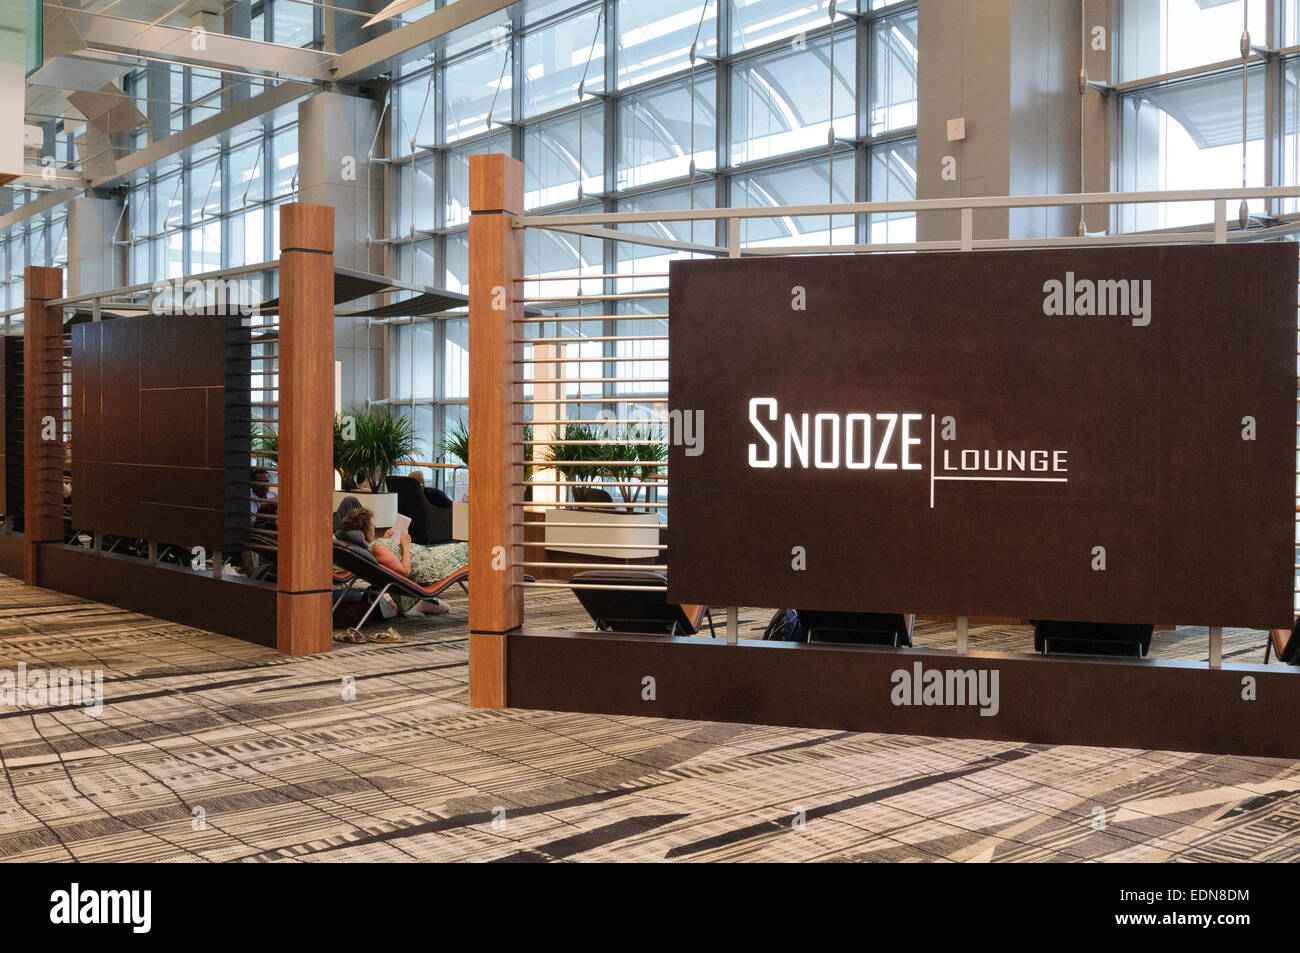 El aeropuerto internacional Changi de Singapur lounge Snooze Foto de stock